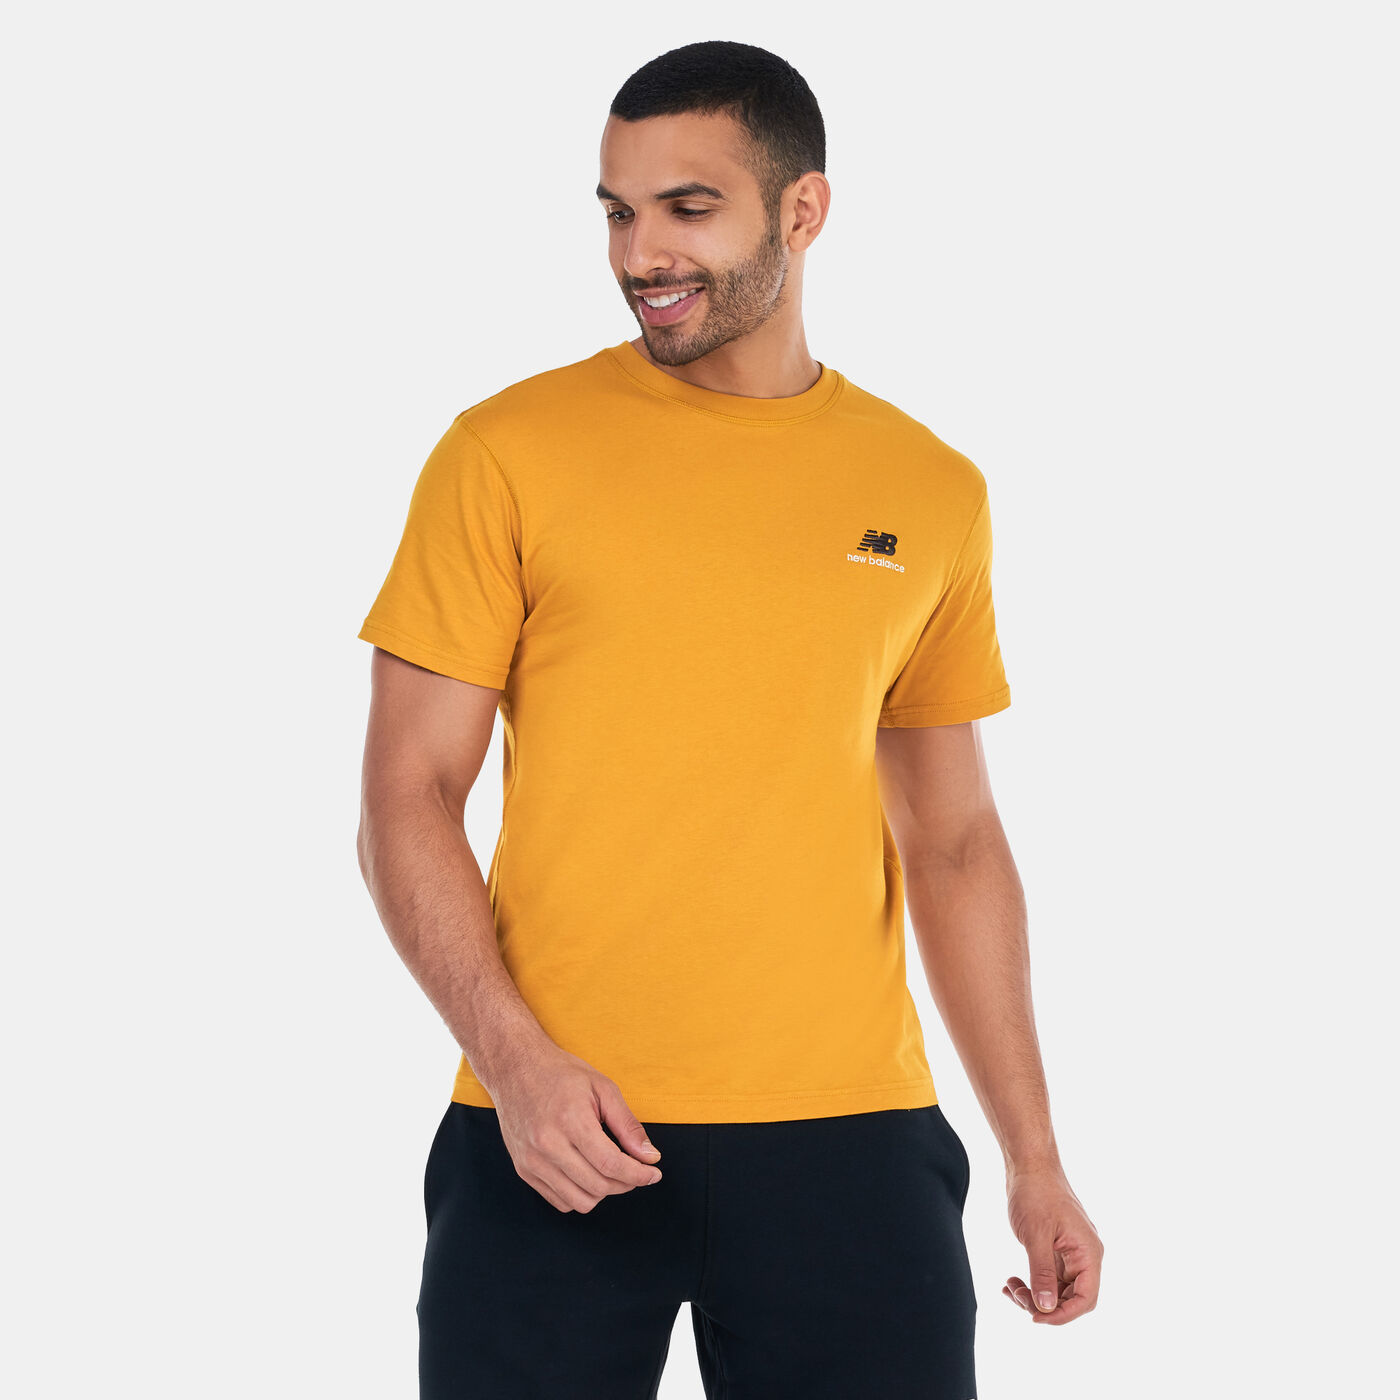 Men's Uni-ssentials Cotton T-Shirt